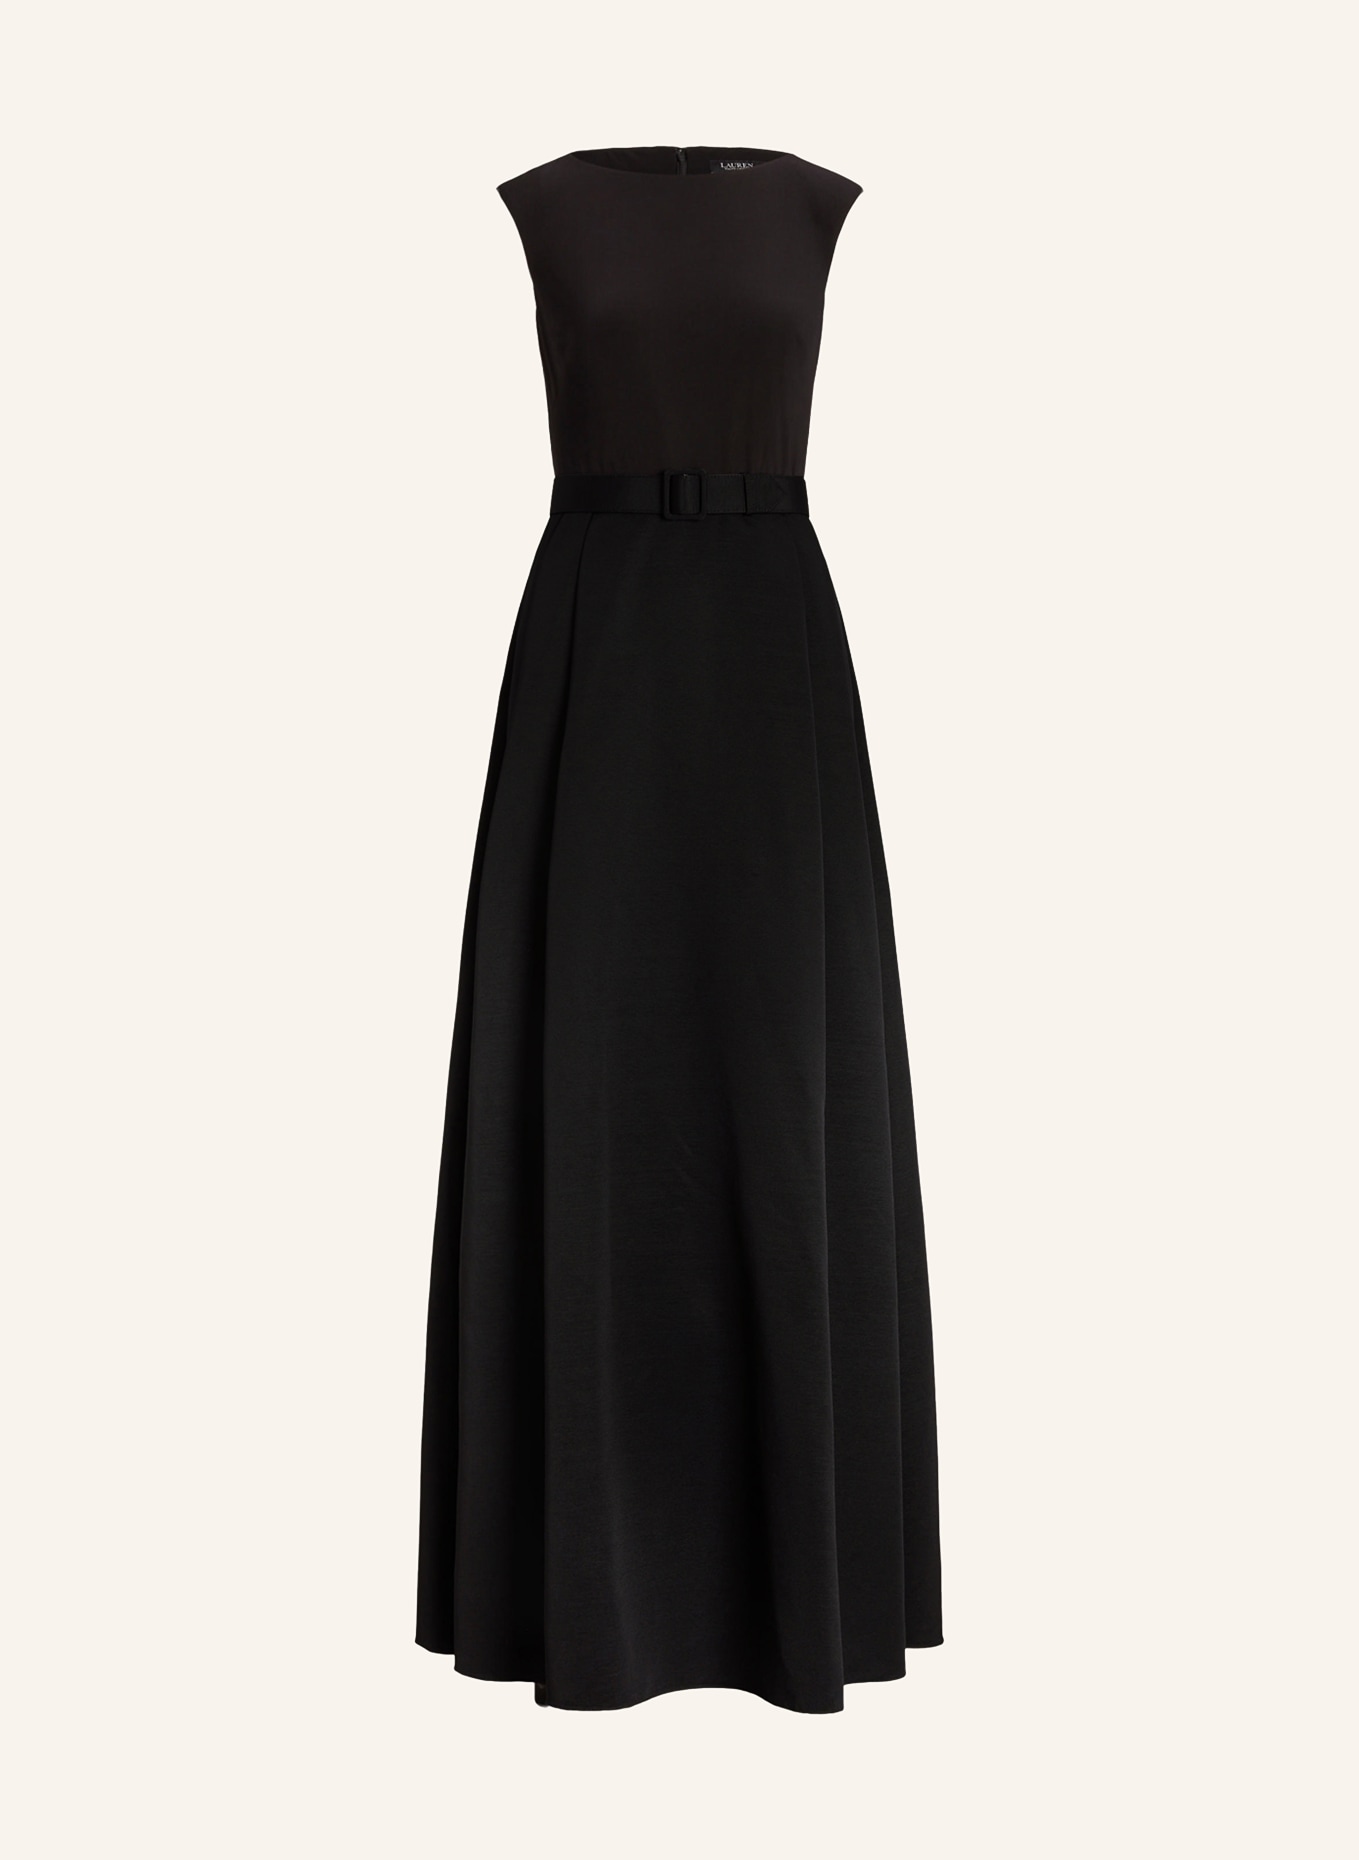 LAUREN RALPH LAUREN Evening dress NOELLA in mixed materials , Color: BLACK (Image 1)